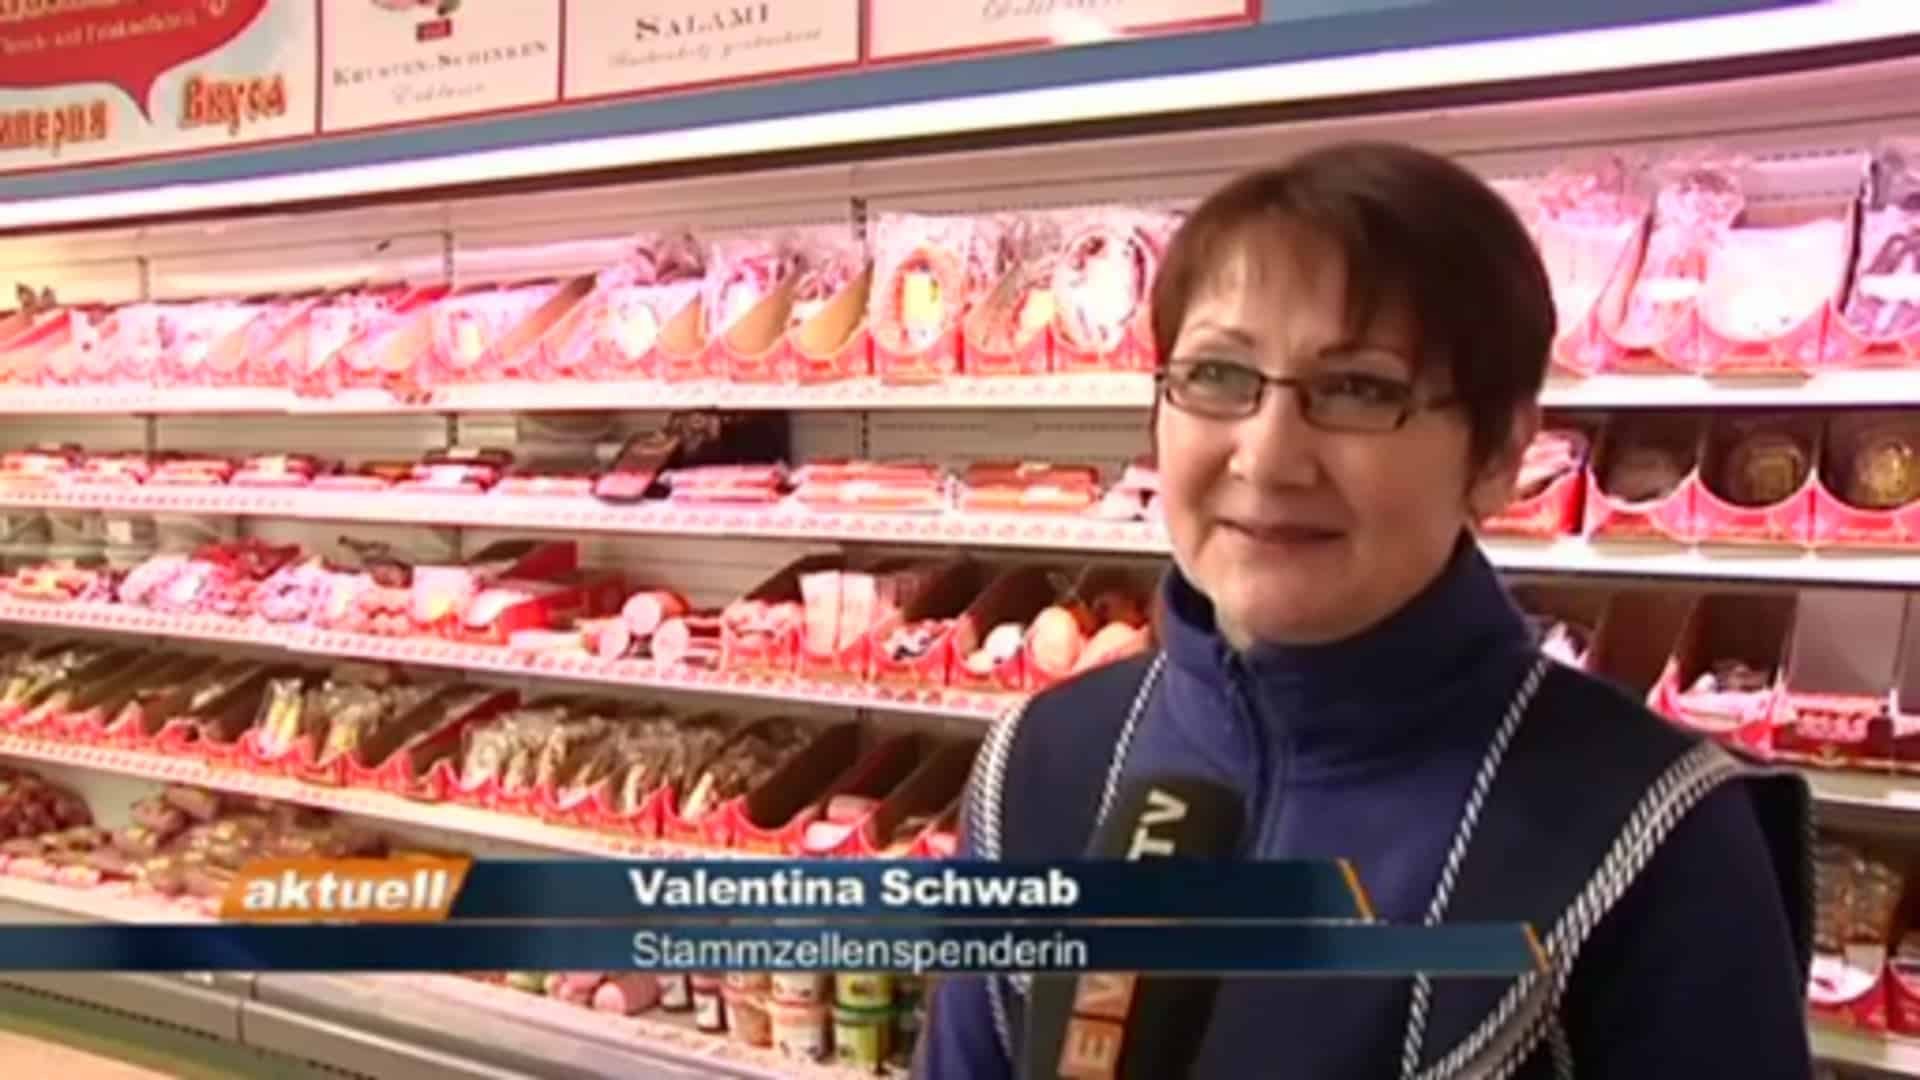 Valentina Schwab rettet mit Stammzellenspende Leben